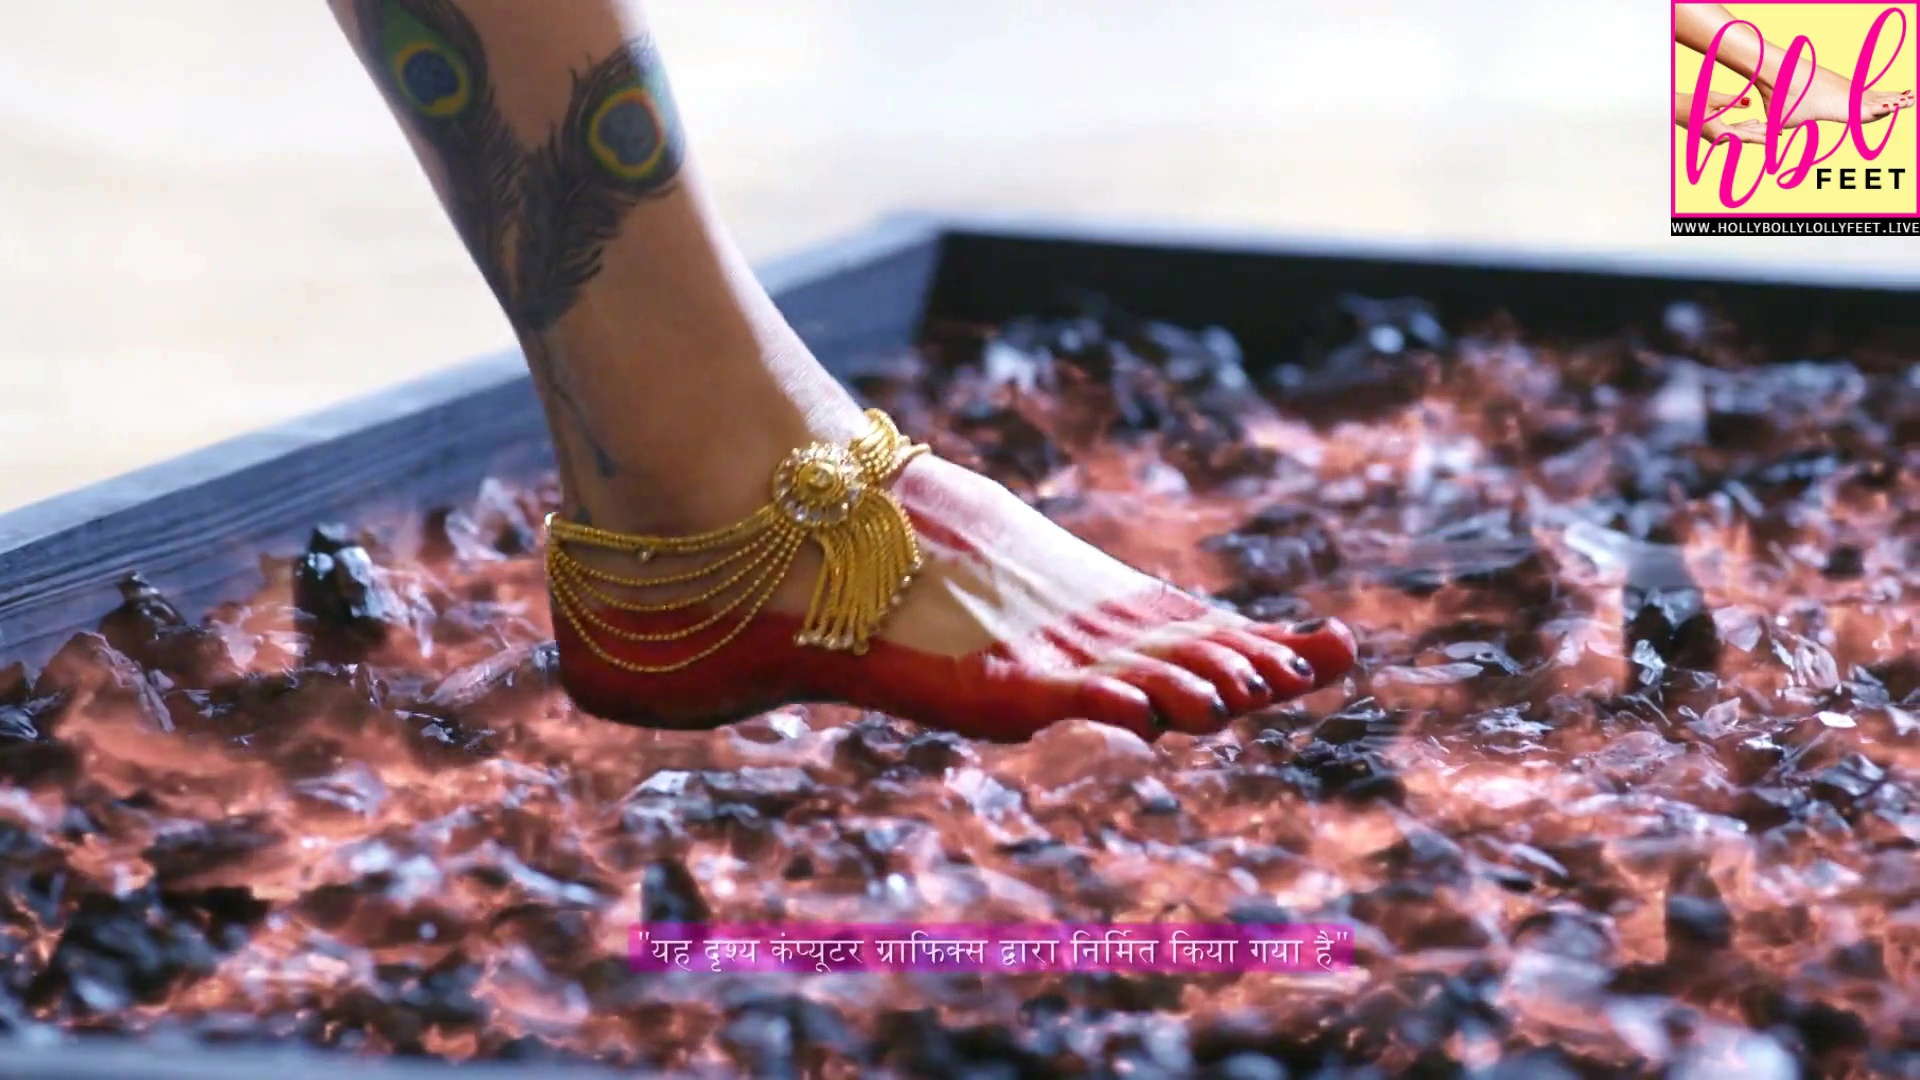 Deepshikha Nagpal Feet Soles